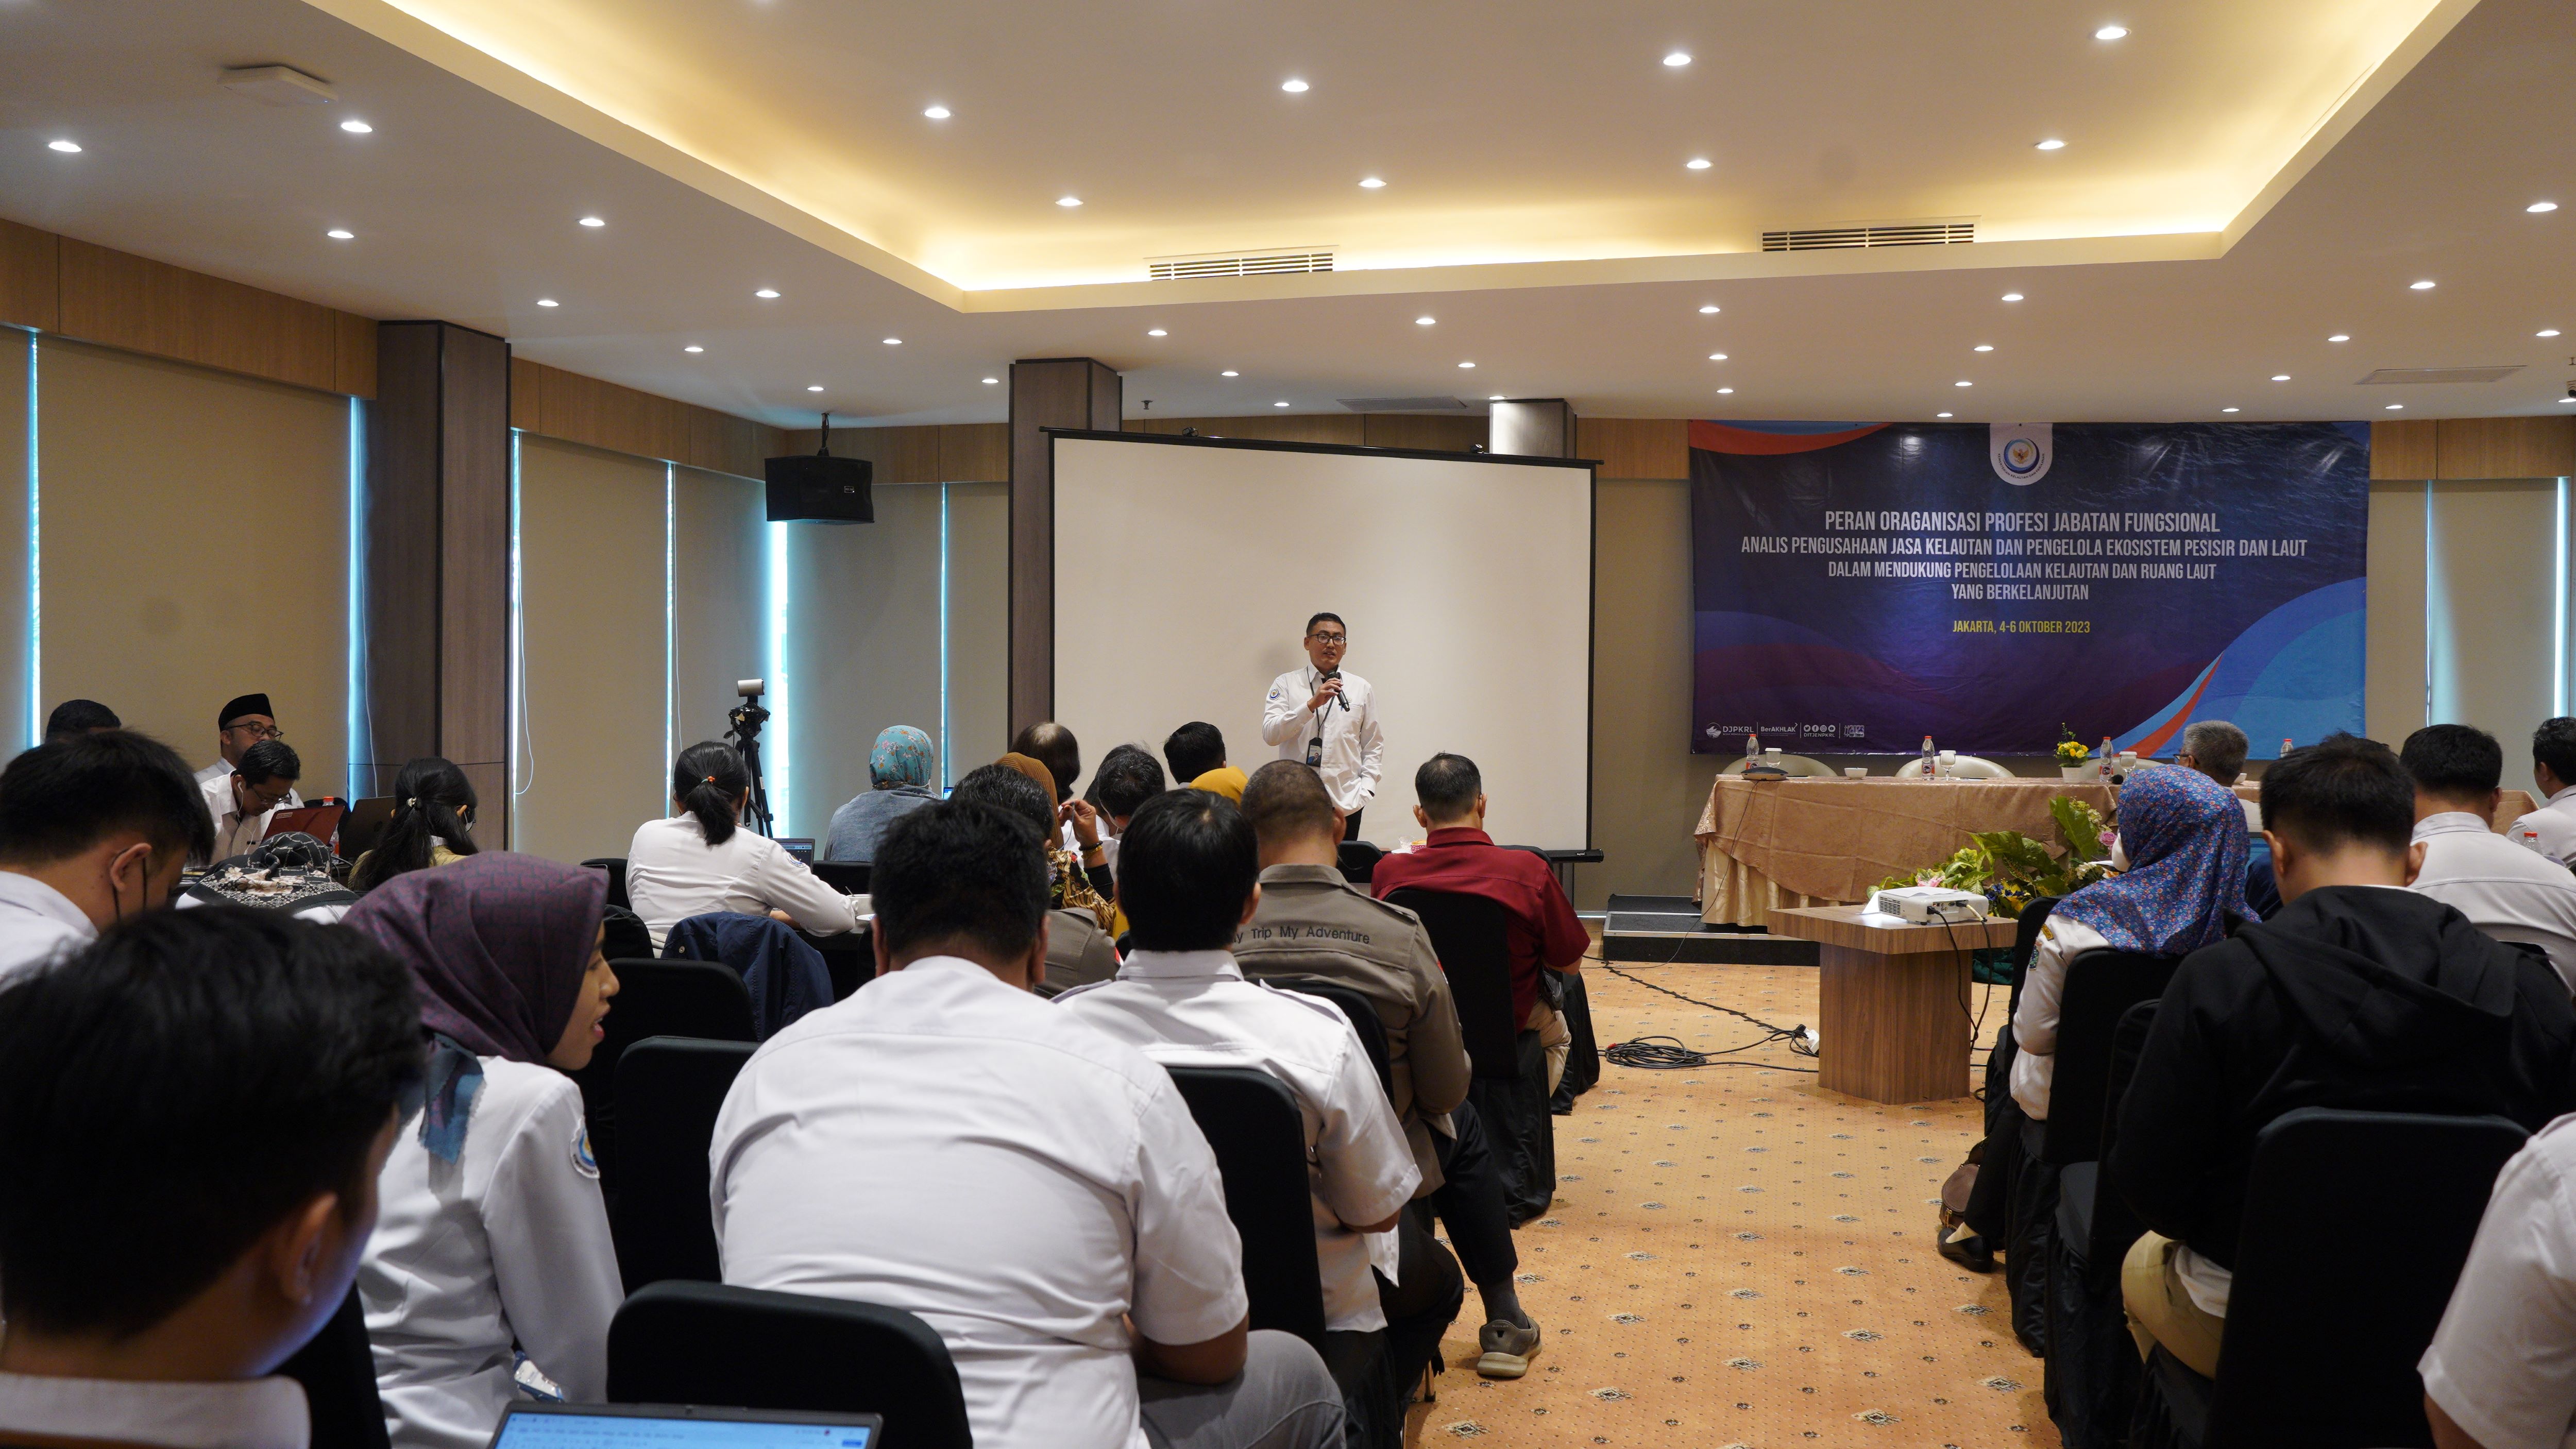 Musyawarah Nasional Jabatan Fungsional Analis Pengusahaan Jasa Kelautdan dan Pengelolaan ekosistem Laut dan Pesisir, Jakarta (4/10).